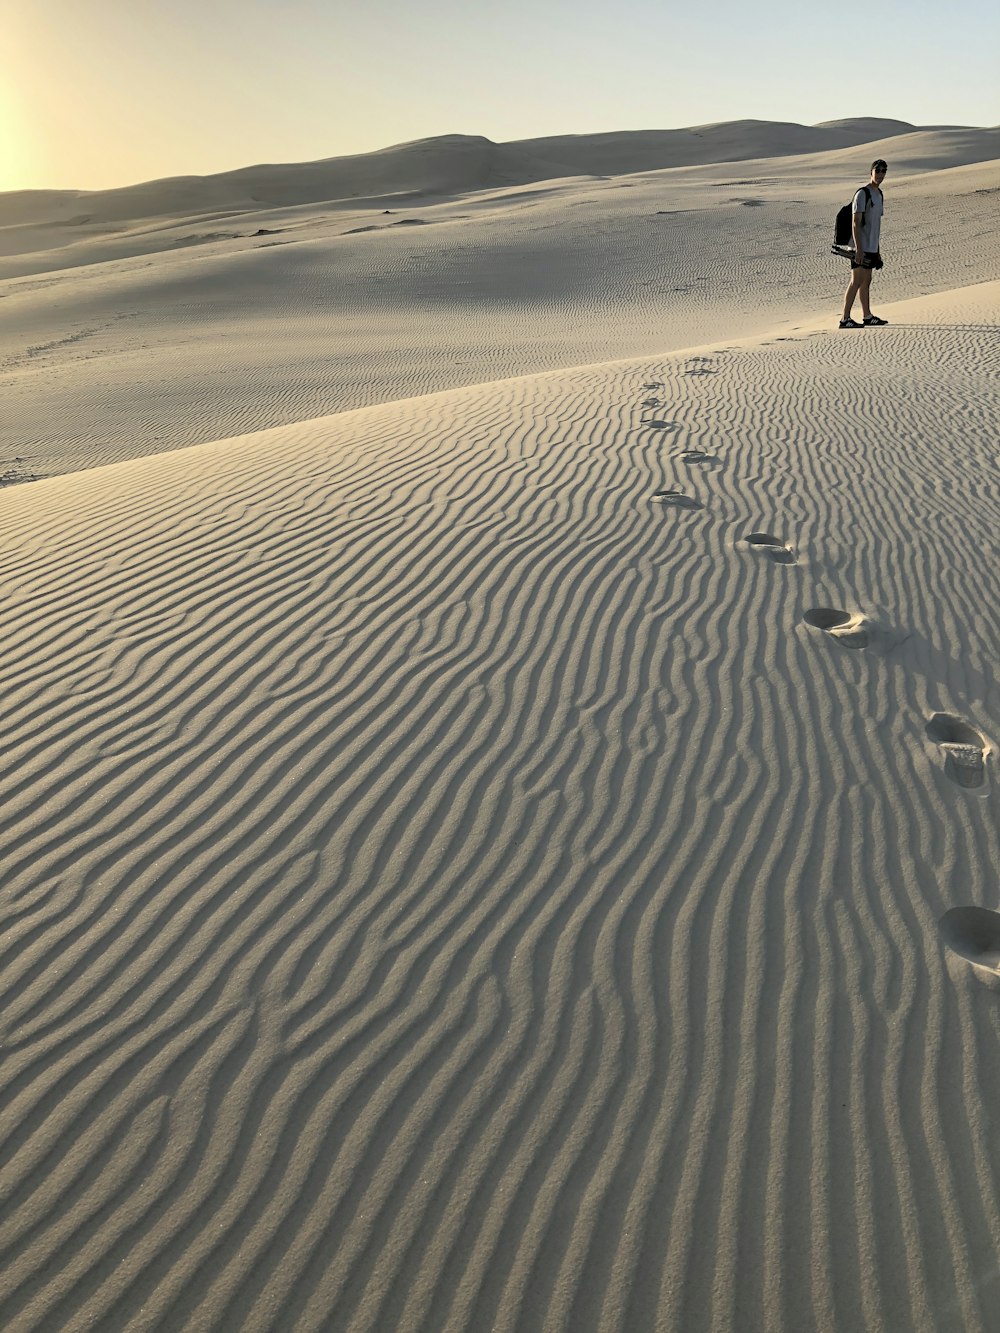 Mann im weißen T-Shirt hinterlässt tagsüber Fußabdrücke auf sandbedecktem Feld